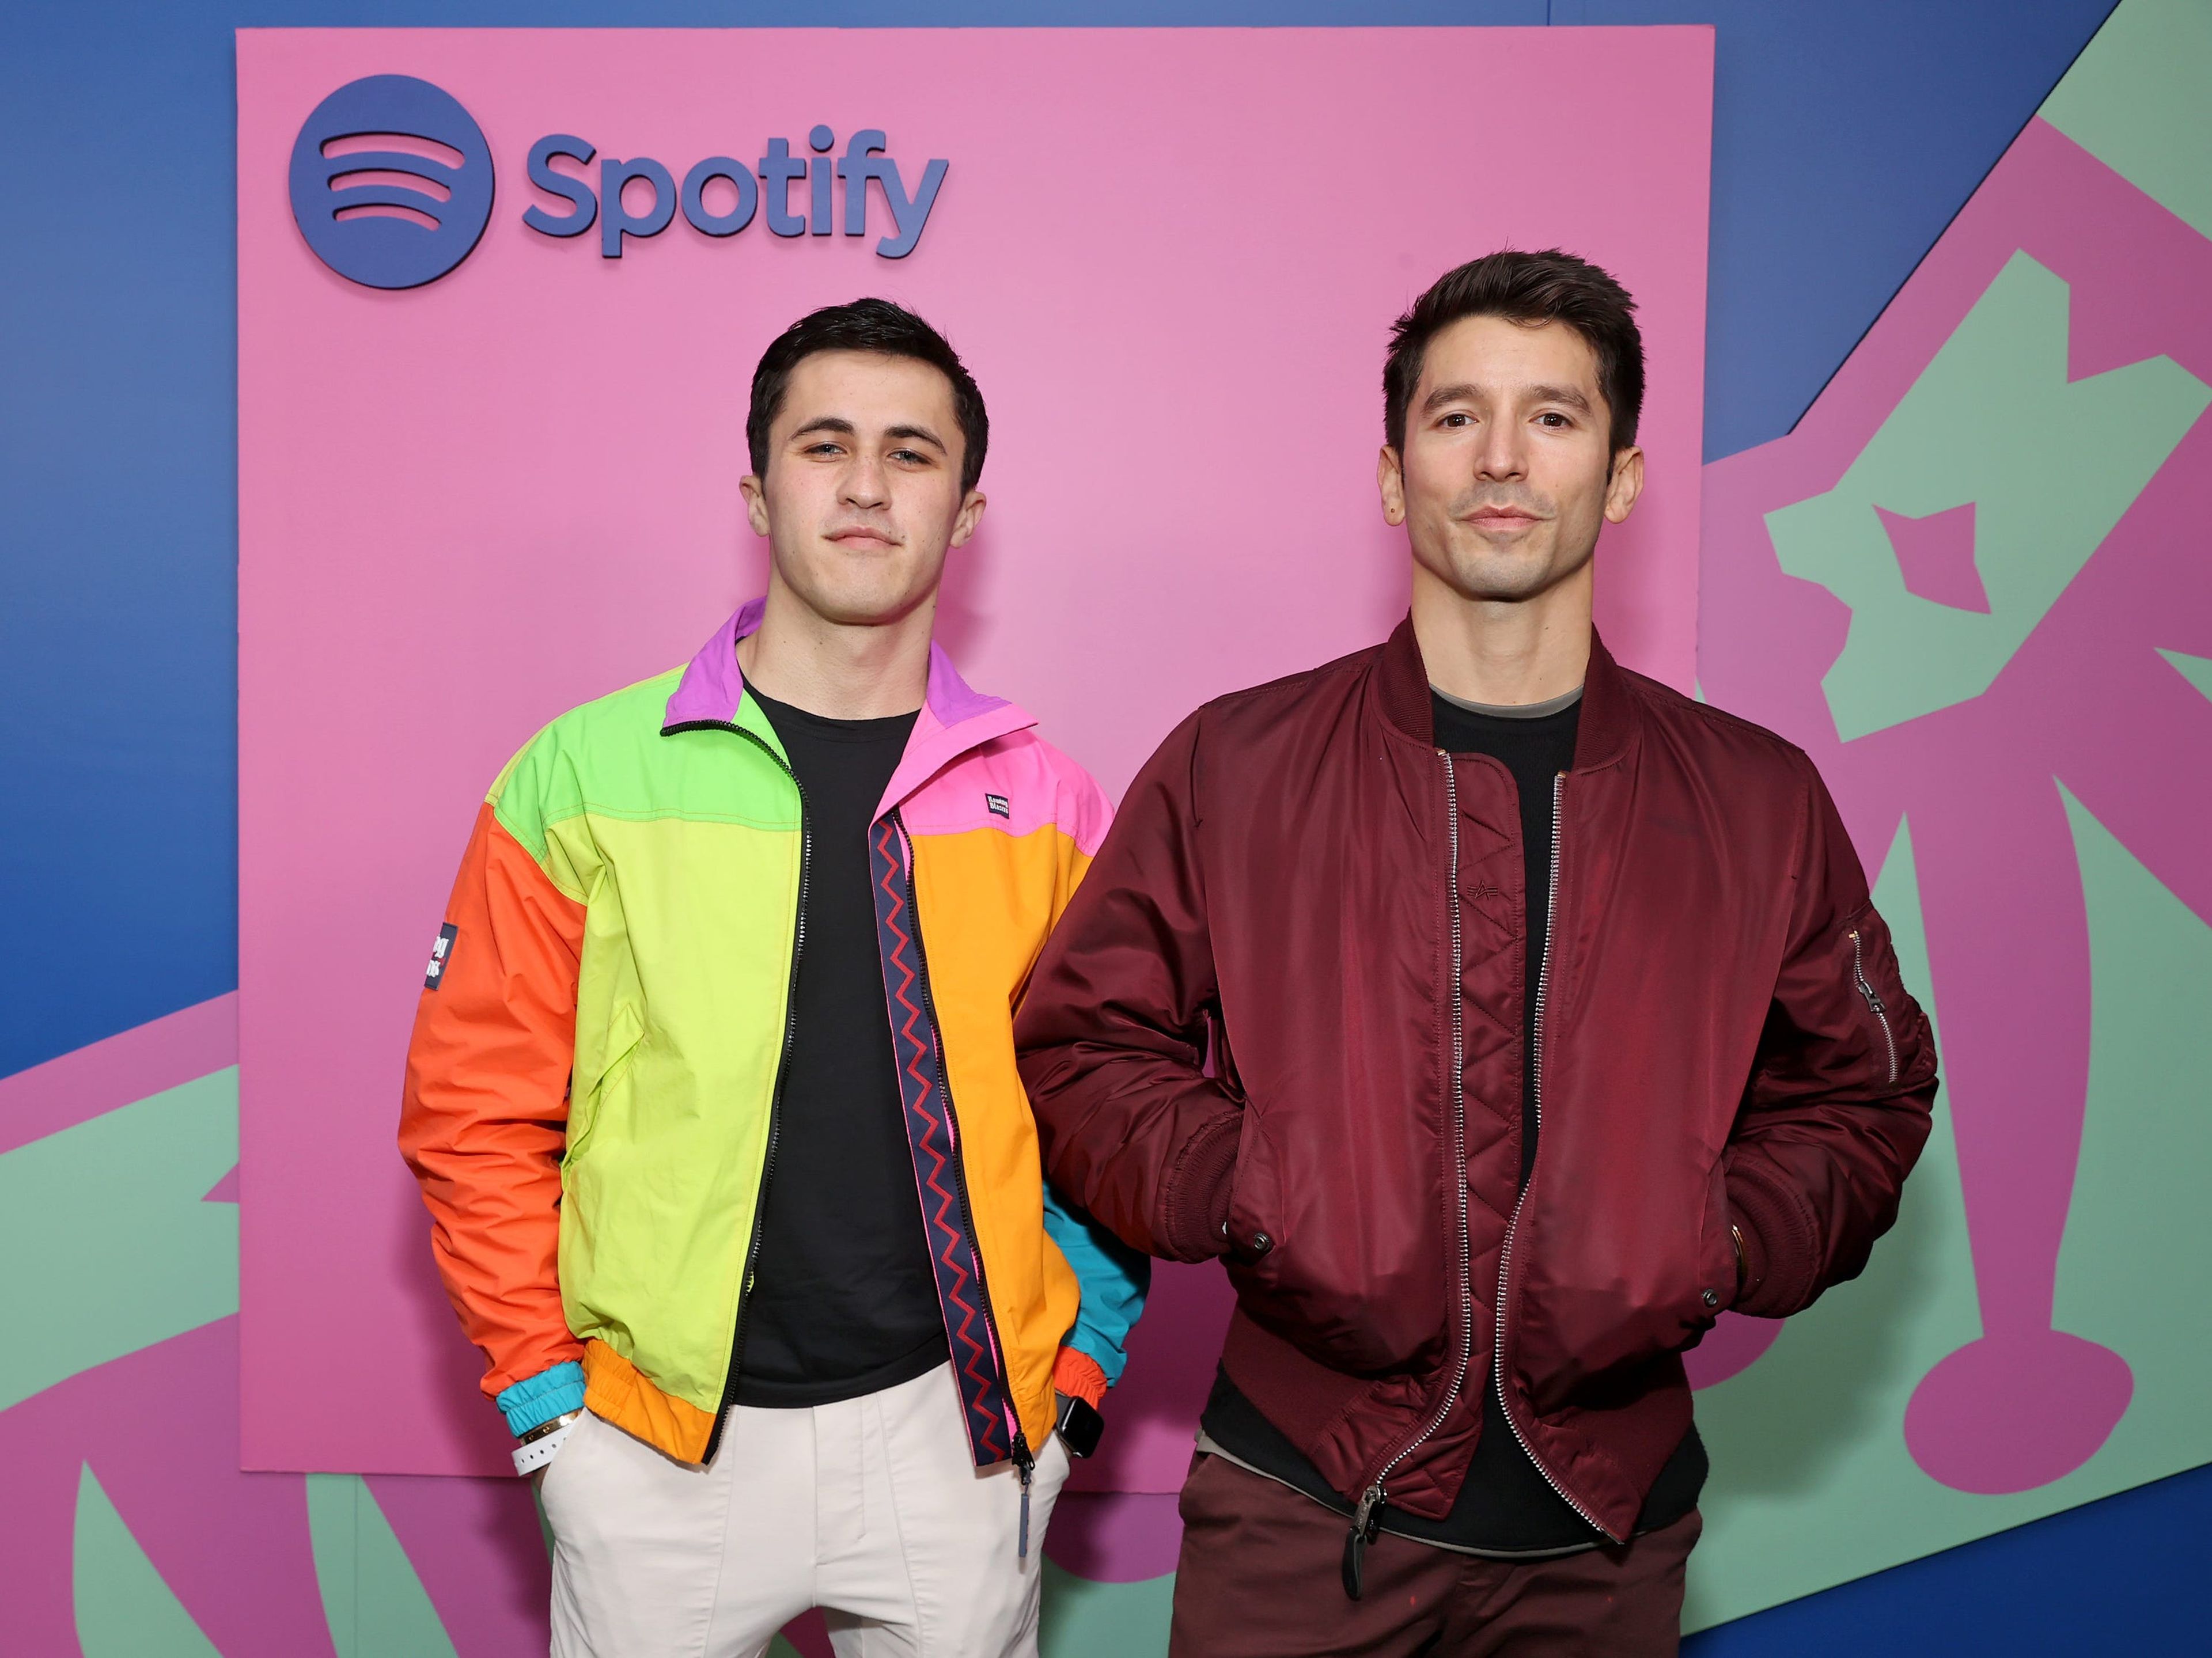 Los creadores de TikTok, Chris Olsen e Ian Paget, posan en una fiesta de Spotify el 14 de diciembre de 2021 en Los Ángeles, California.